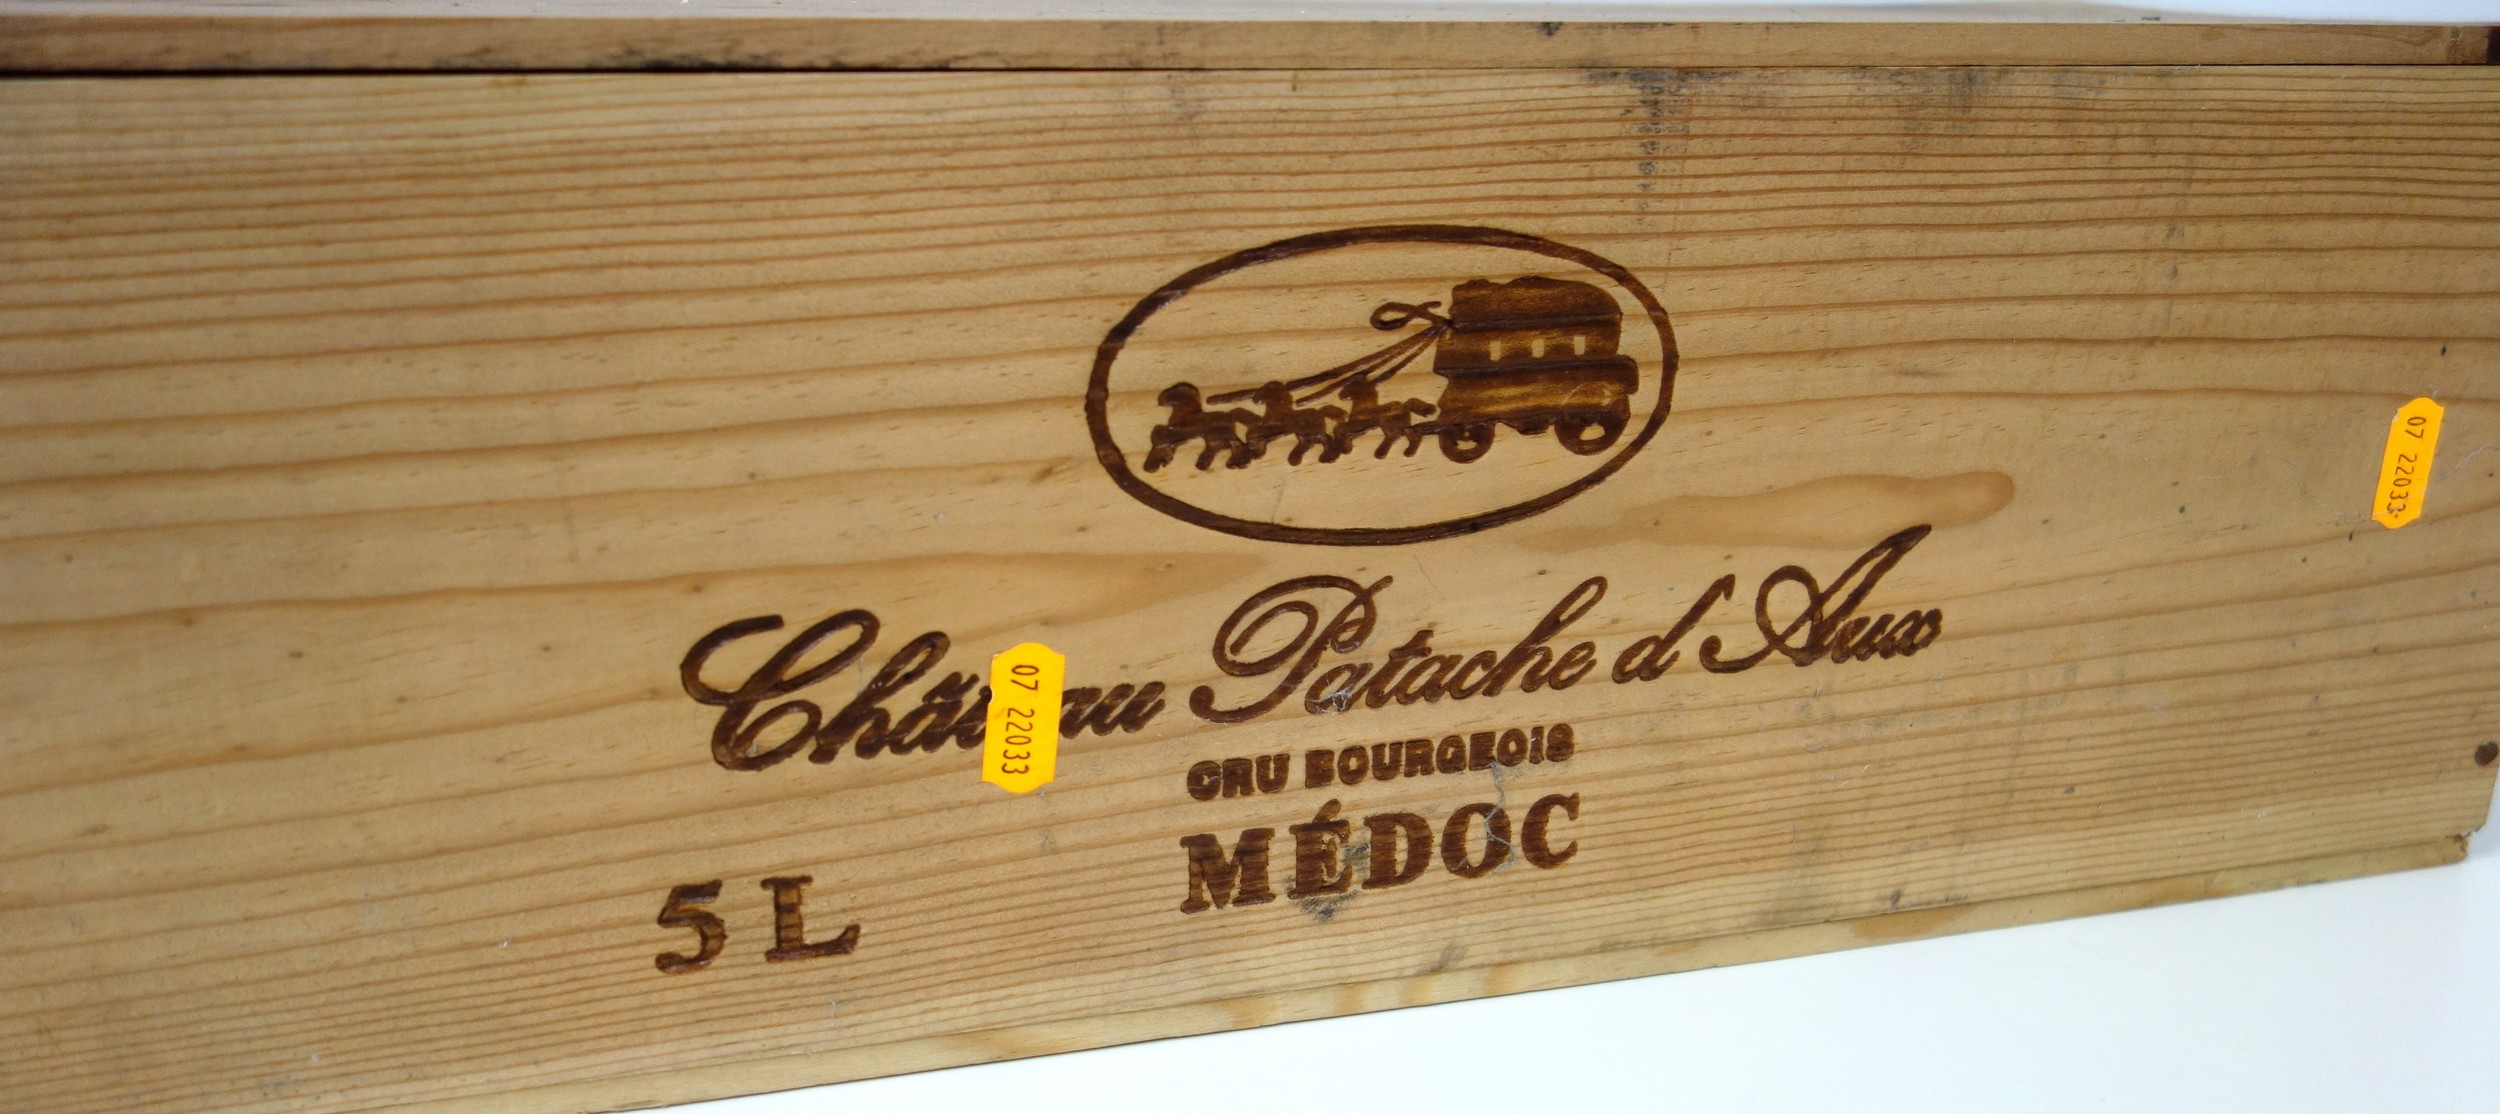 1 x 5 litre bottle Chateau Patache D'Aux, Cru Bourgeois, Medoc 2003, in OWC